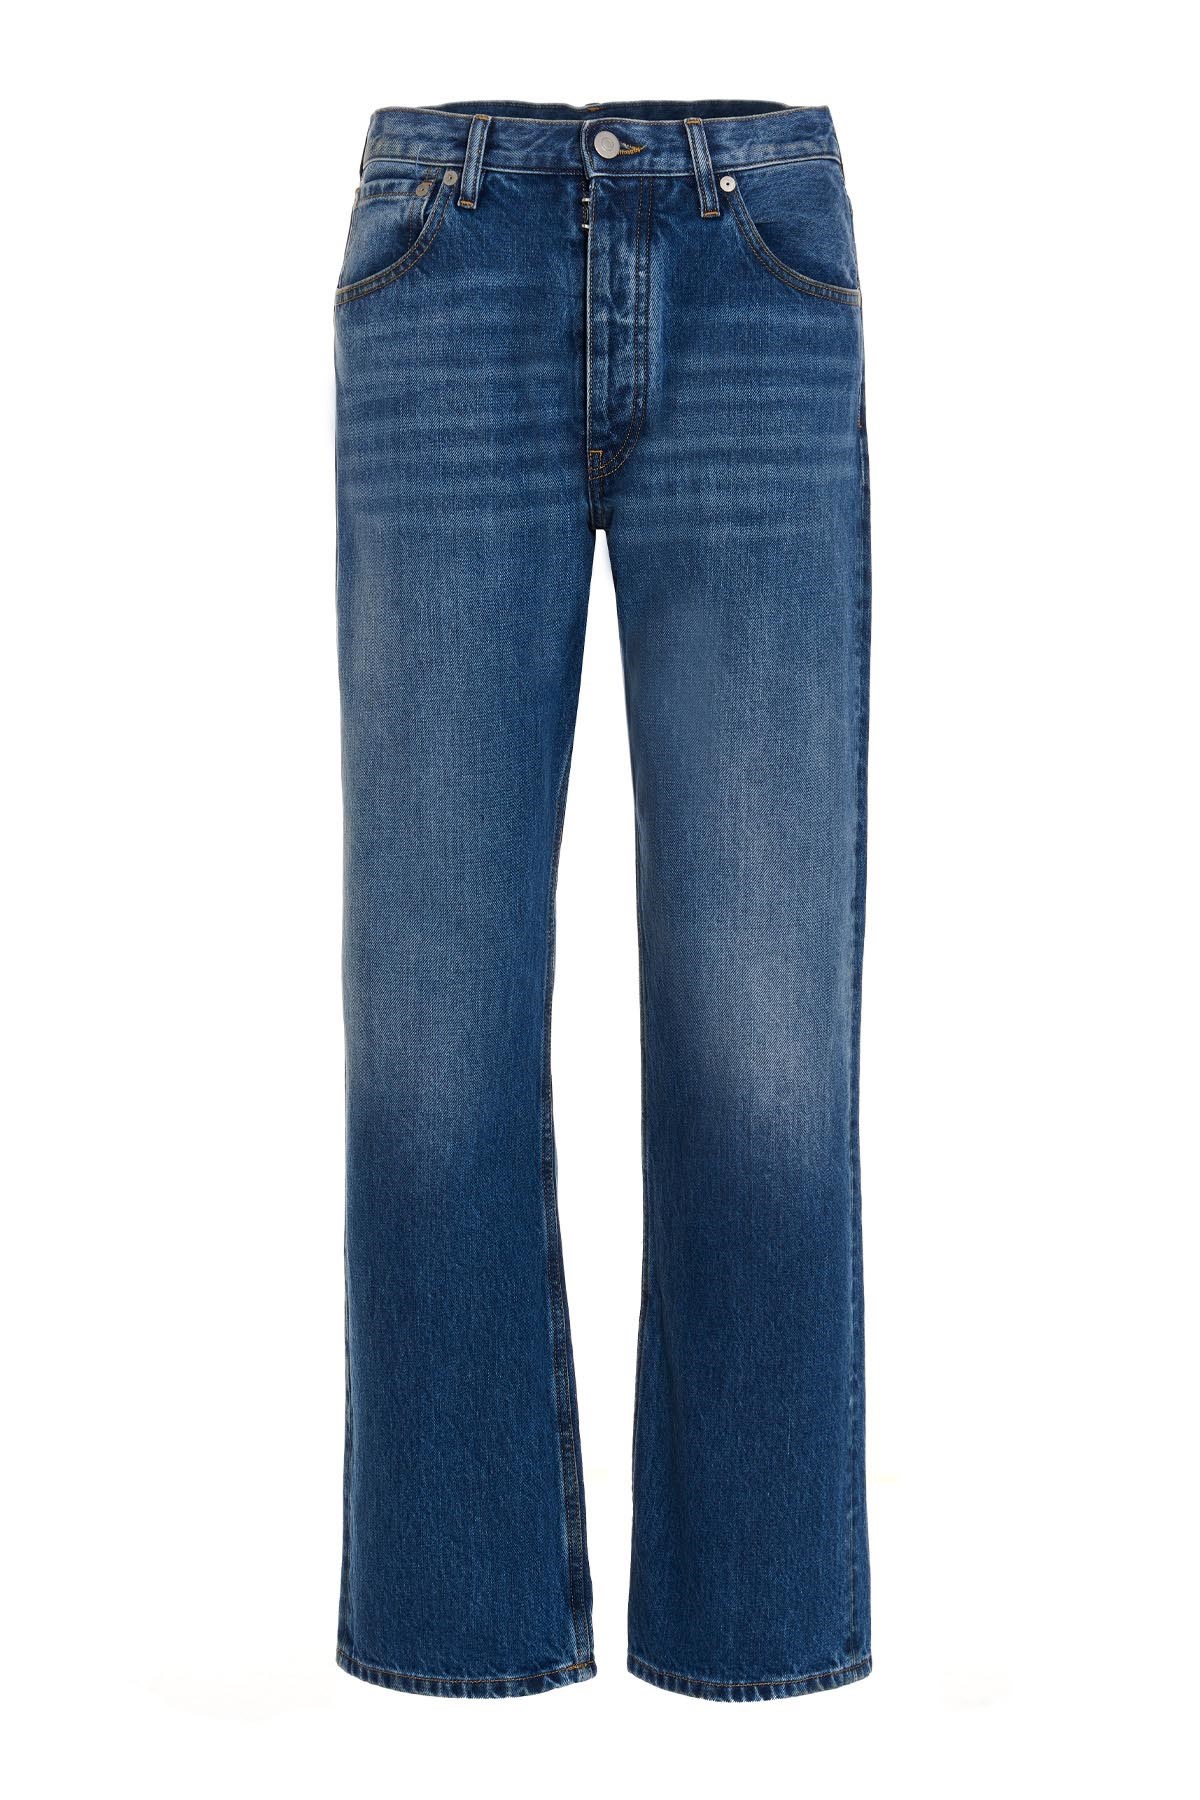 MAISON MARGIELA 'Stitching’ Detailed Jeans